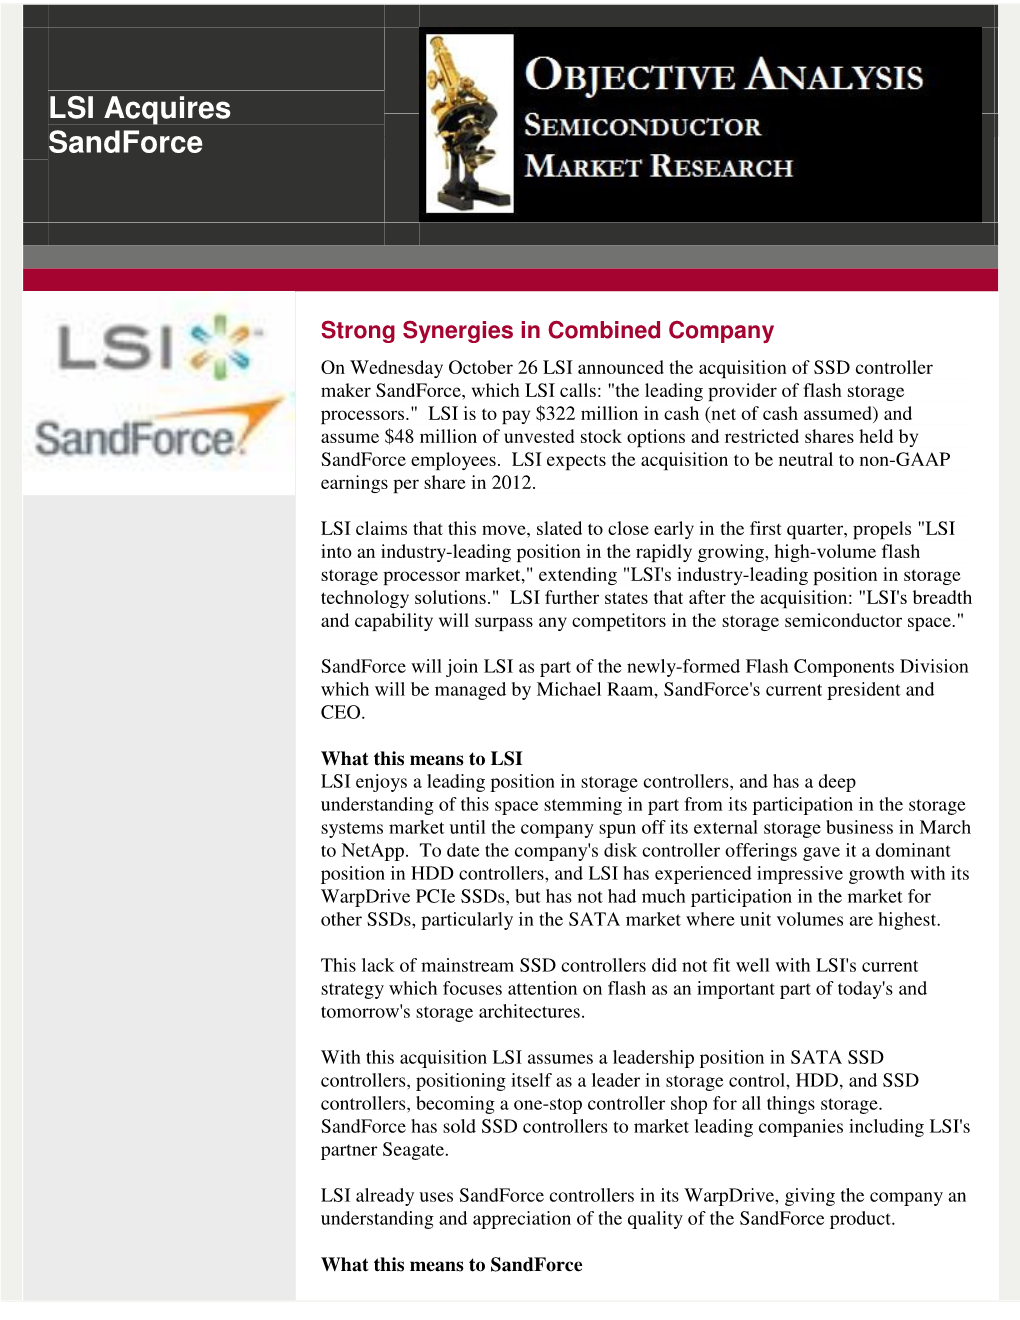 LSI Acquires Sandforce